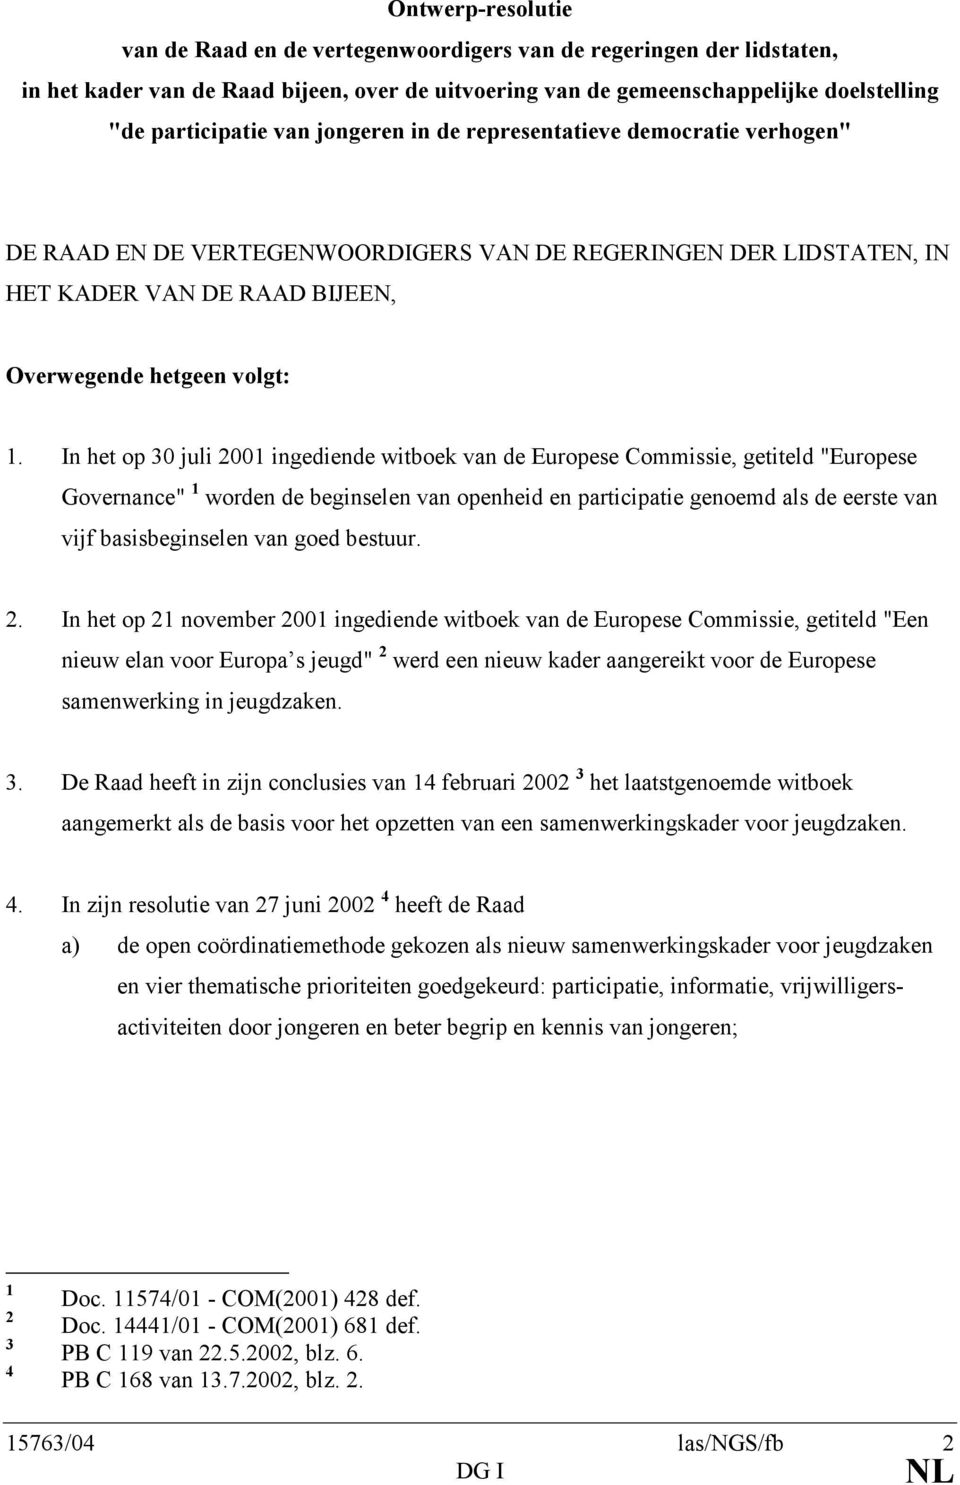 In het op 30 juli 2001 ingediende witboek van de Europese Commissie, getiteld "Europese Governance" 1 worden de beginselen van openheid en participatie genoemd als de eerste van vijf basisbeginselen